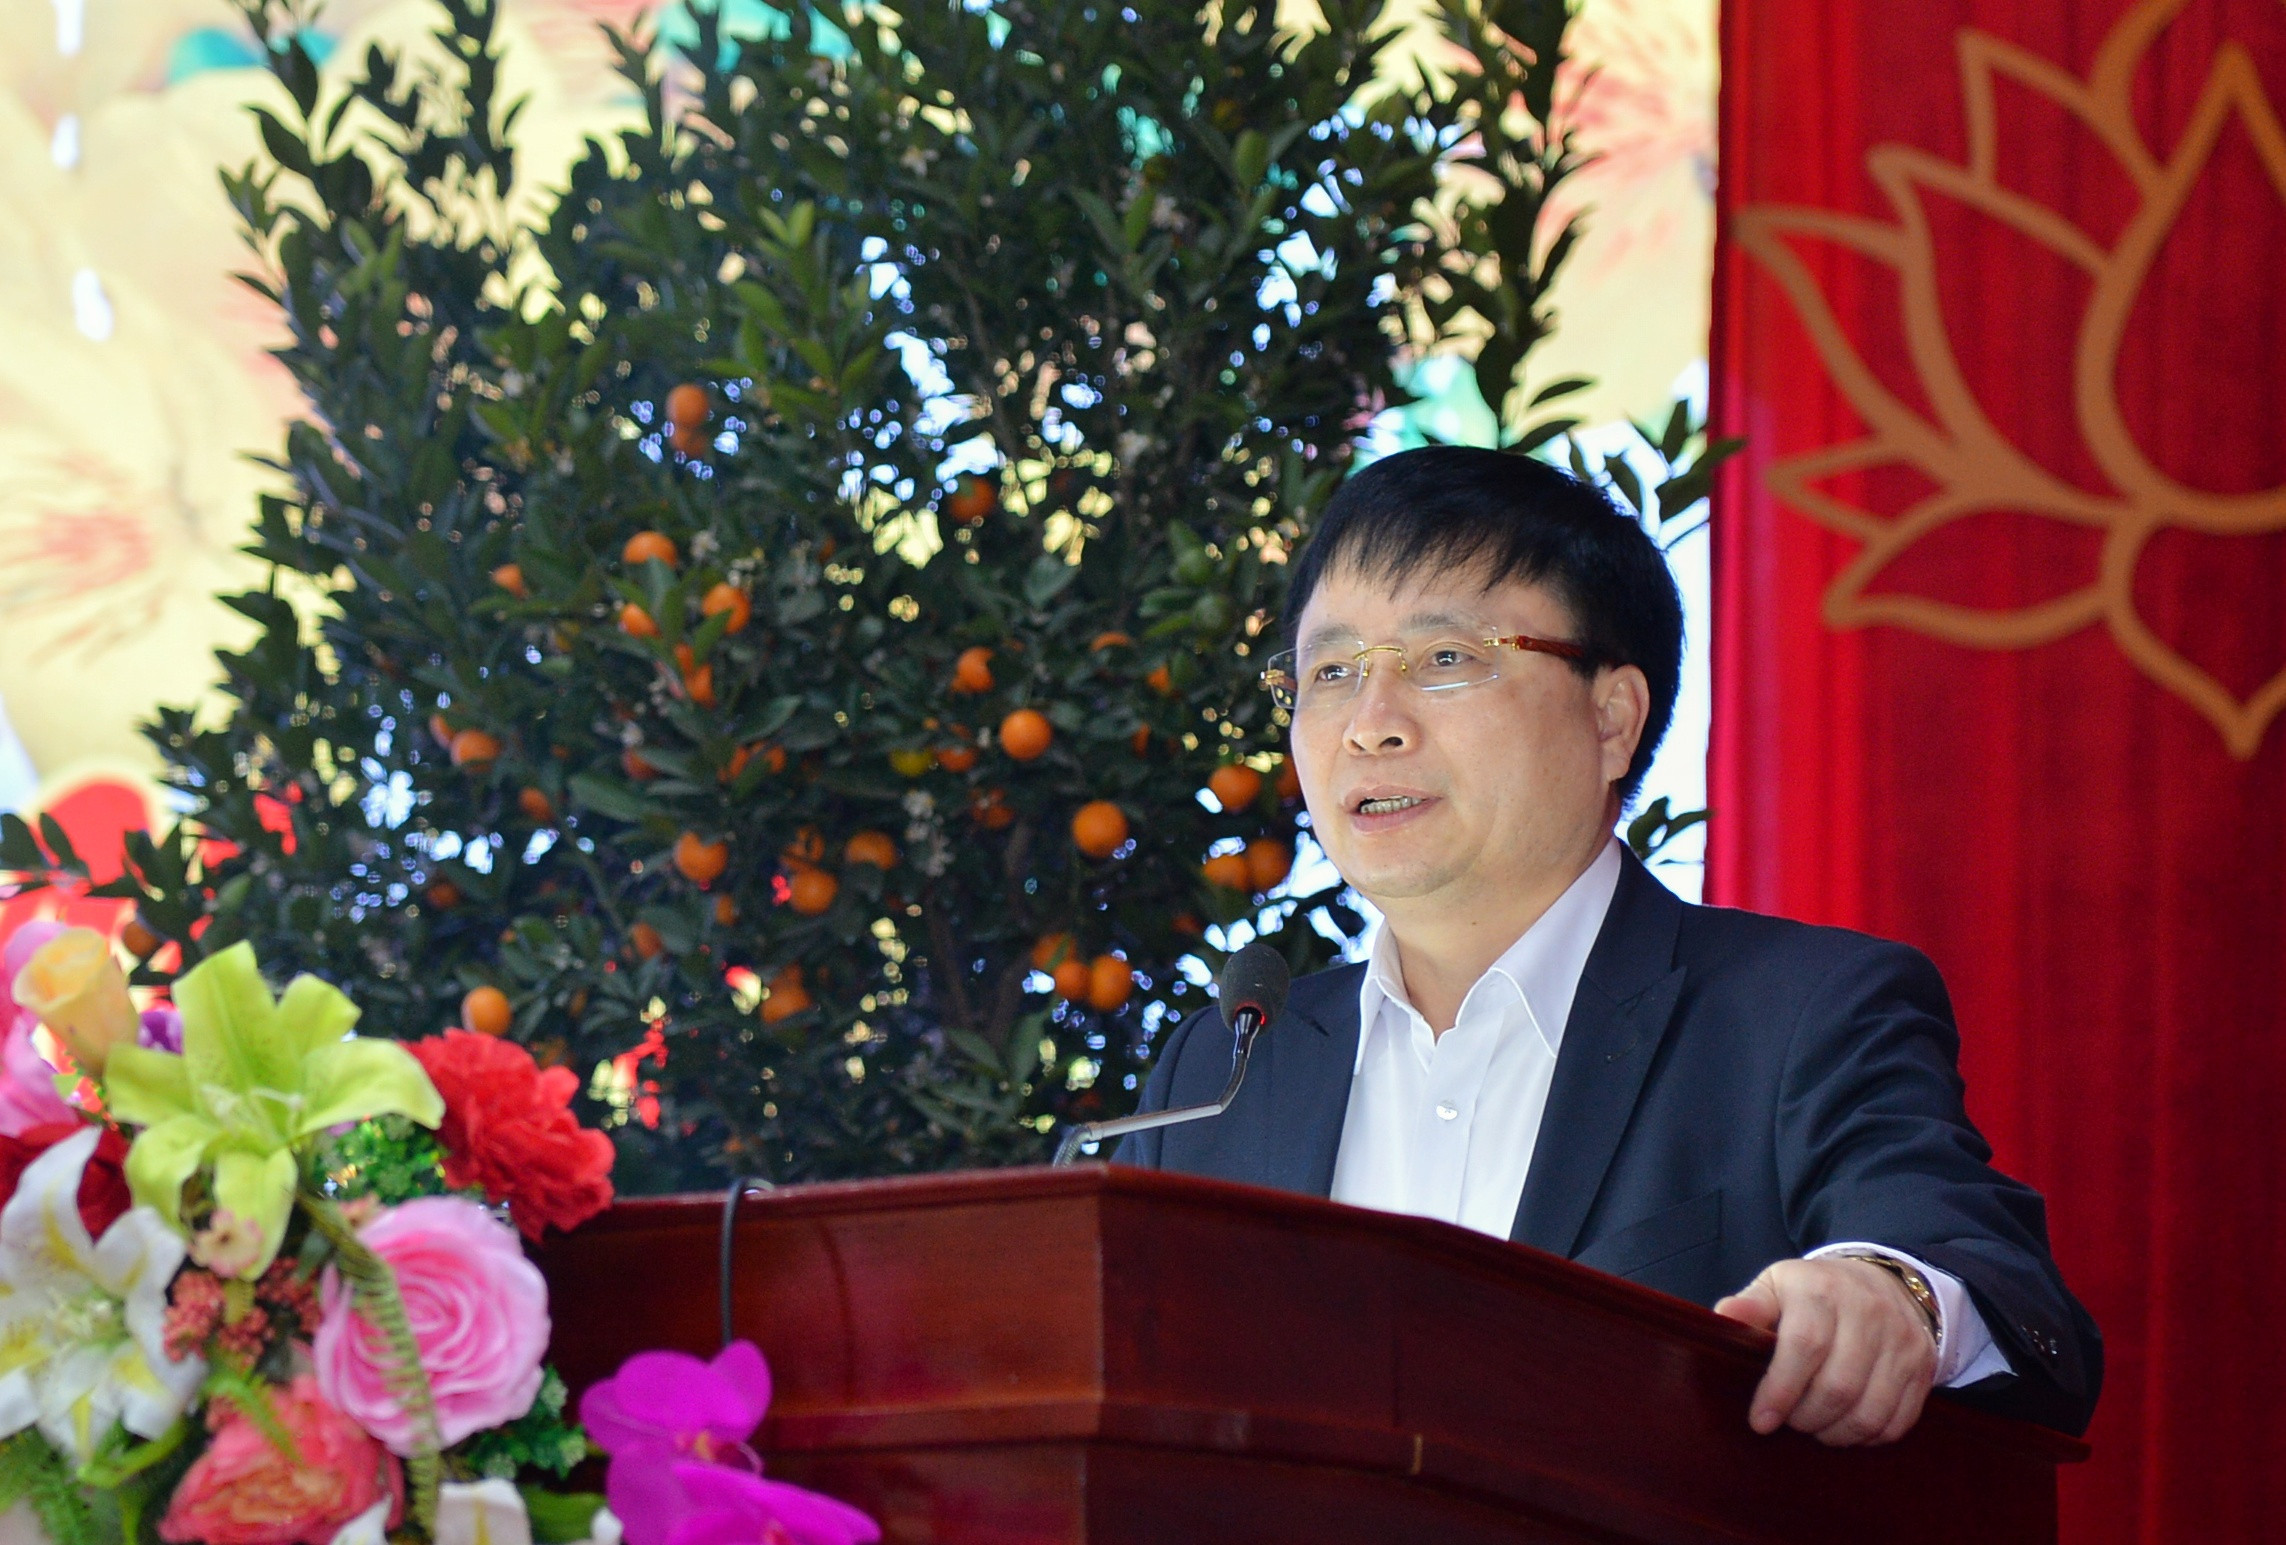 Đồng chí Bùi Đình Long - Phó Chủ tịch tỉnh phát biểu chúc mừng năm mới.Ảnh: Thành Cường